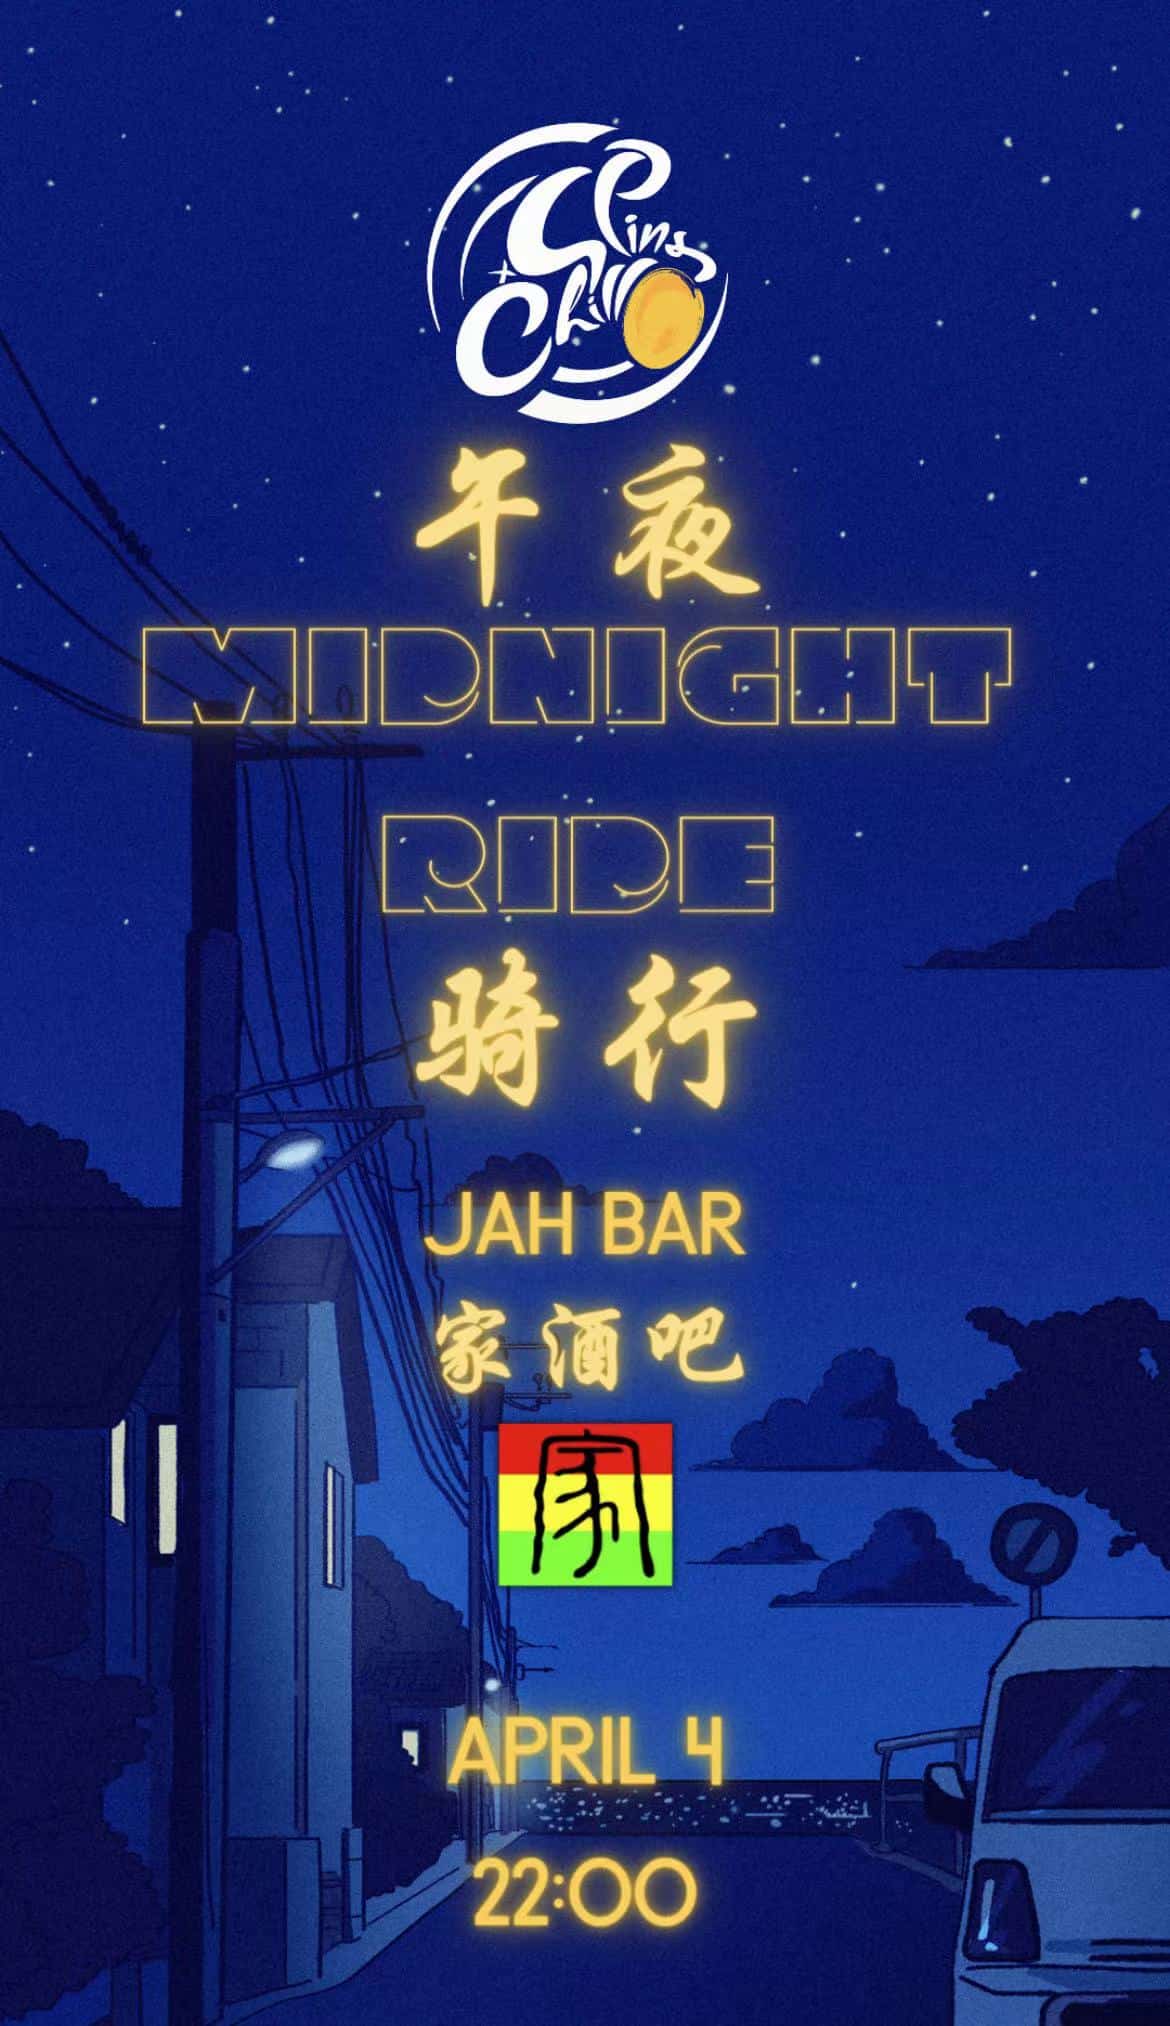 midnight bike ride chengdu 1